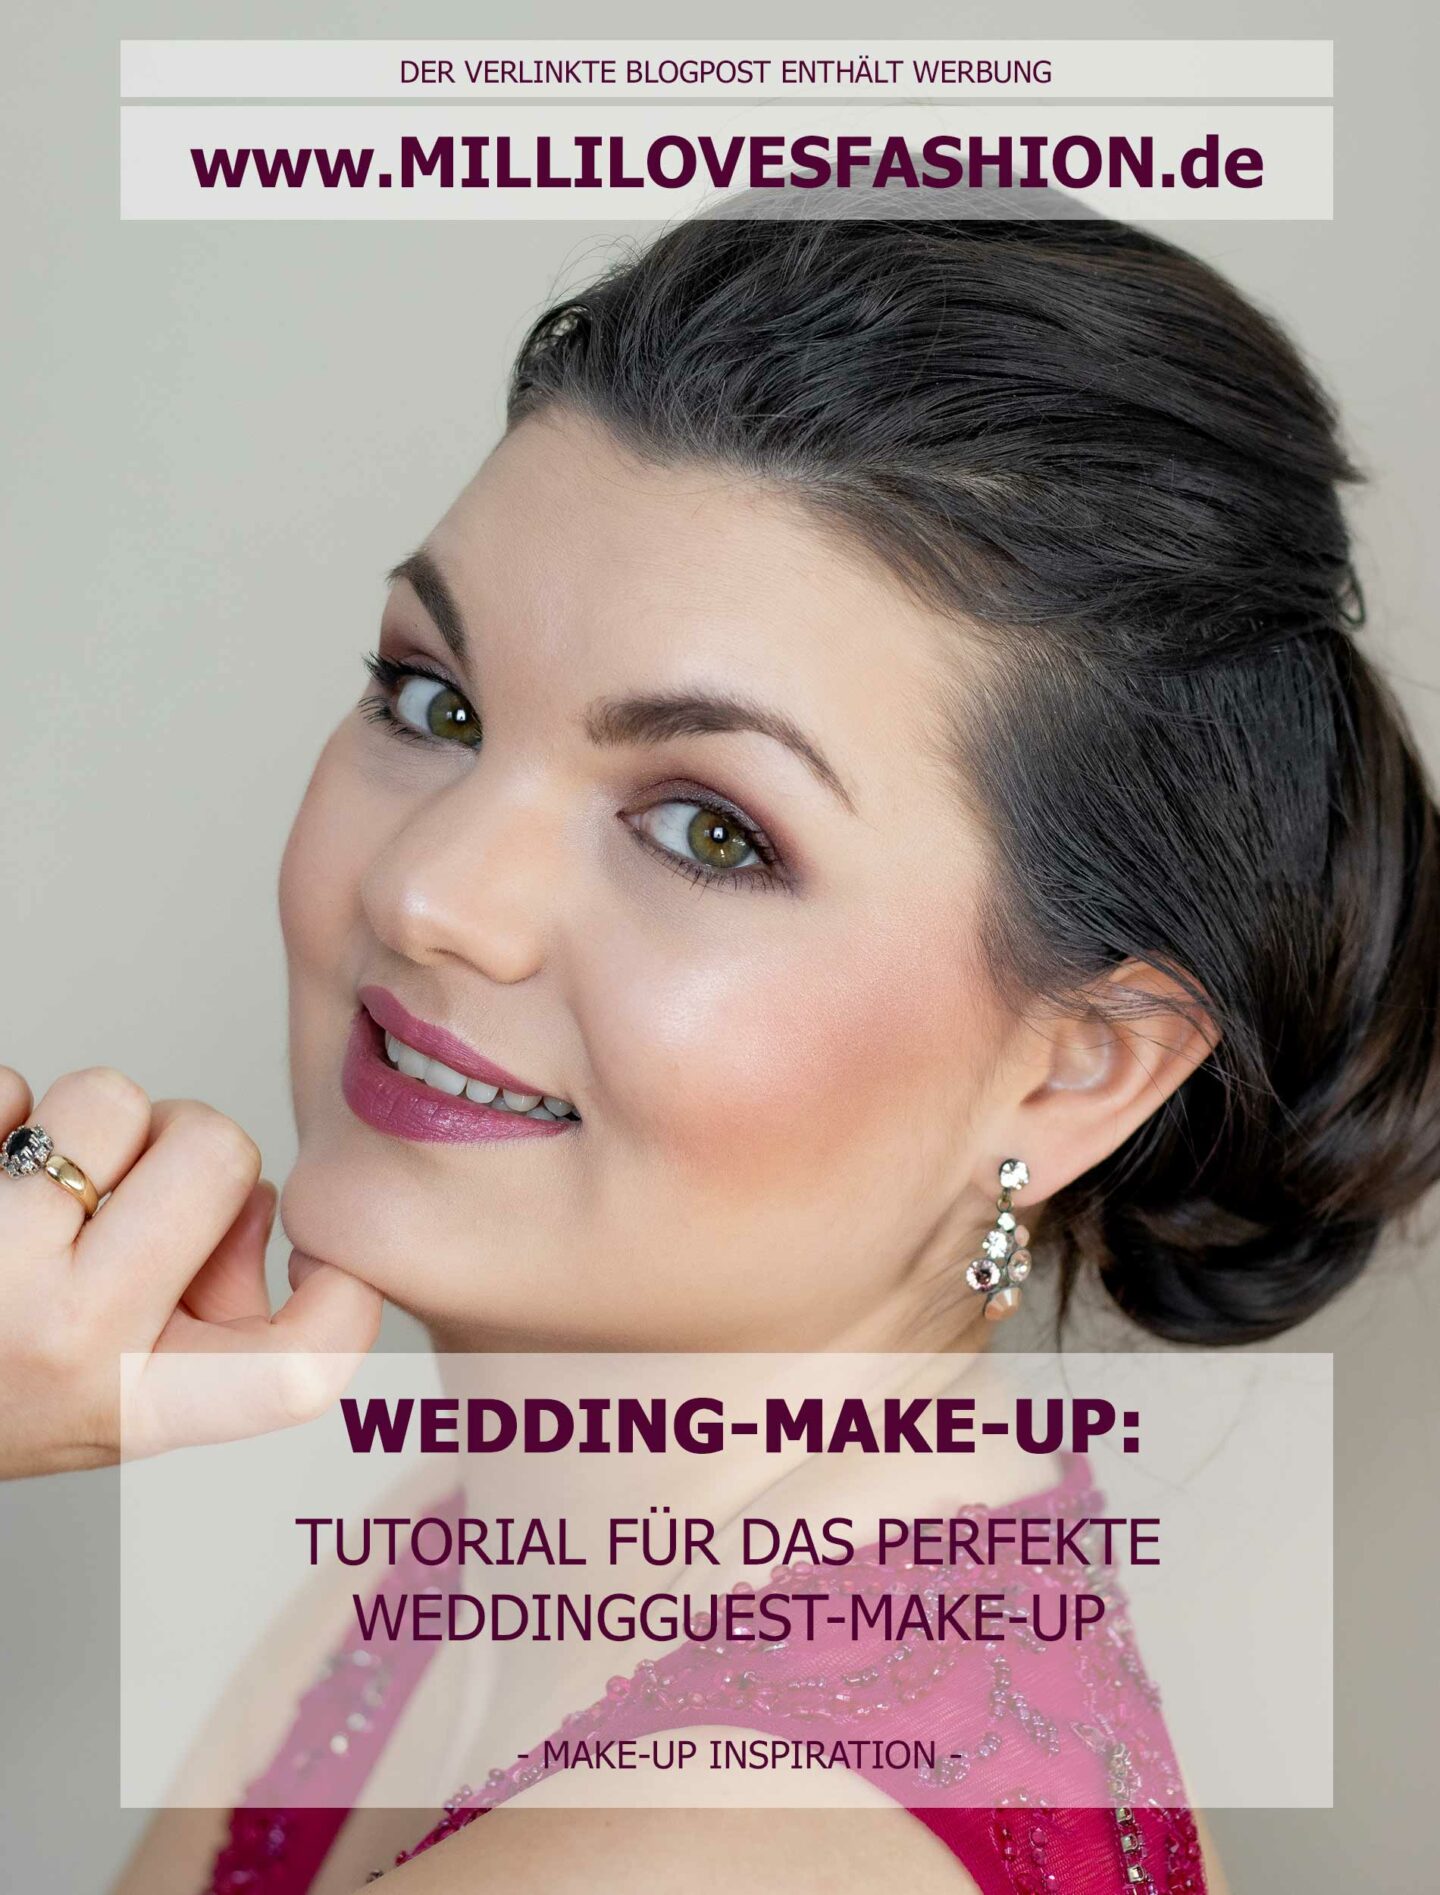 Make-Up Tutorial für das perfekte Make-Up als Hochzeitsgast